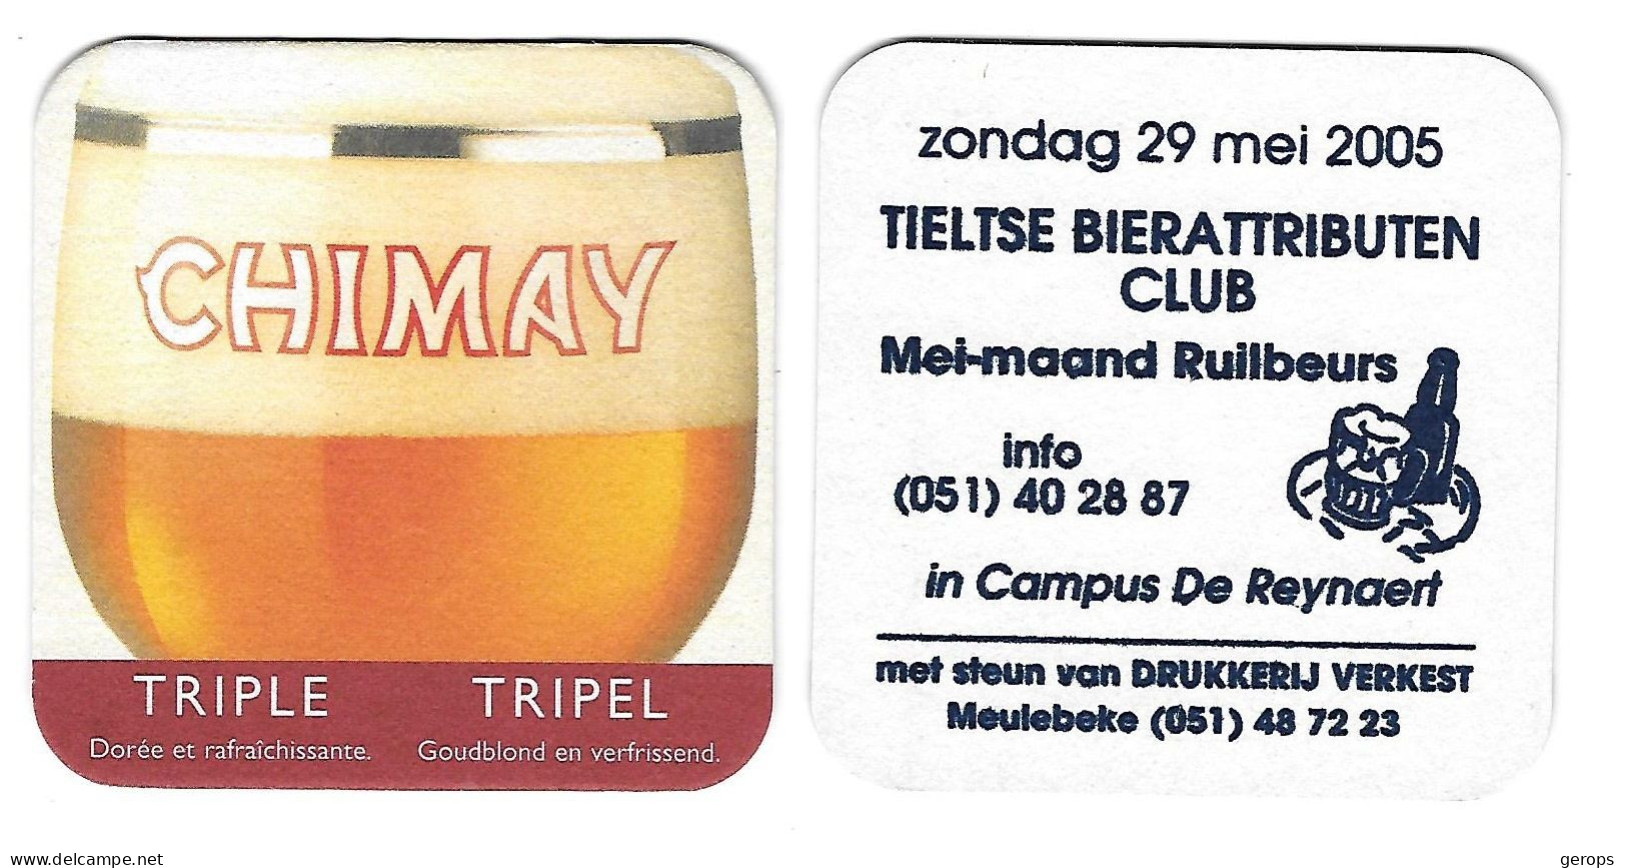 11a Chimay  Tripel Rv Tieltse BA Club 29 Mei 2005 - Beer Mats